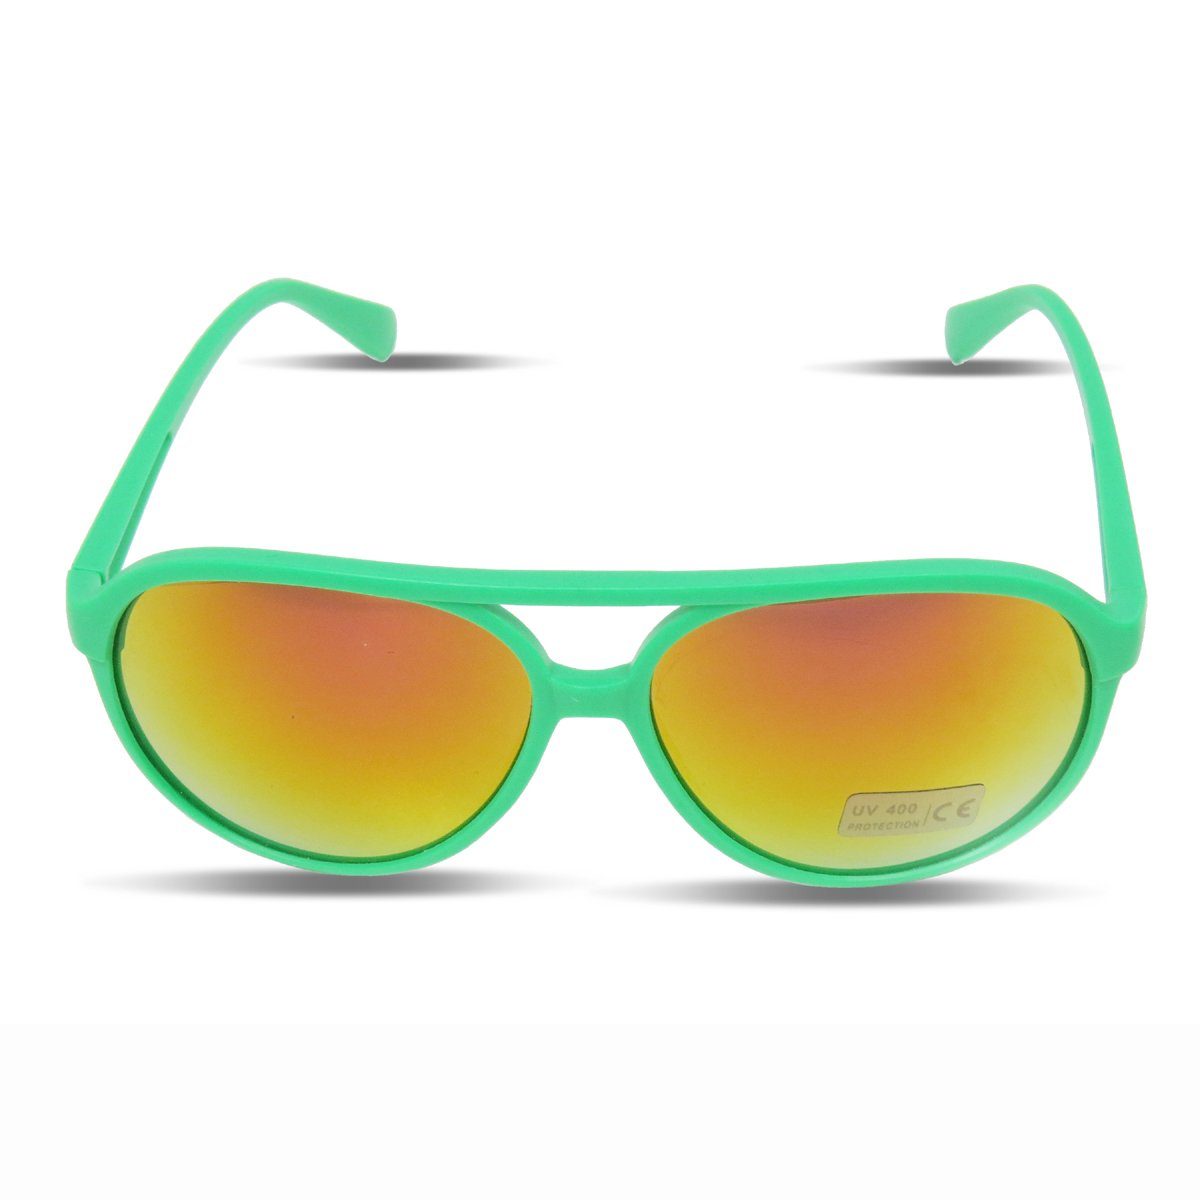 Sonia Originelli Sonnenbrille Sonnenbrille Onesize, Verspiegelt Verspiegelt Neon gruen Gläser: Brille Knallig Fun